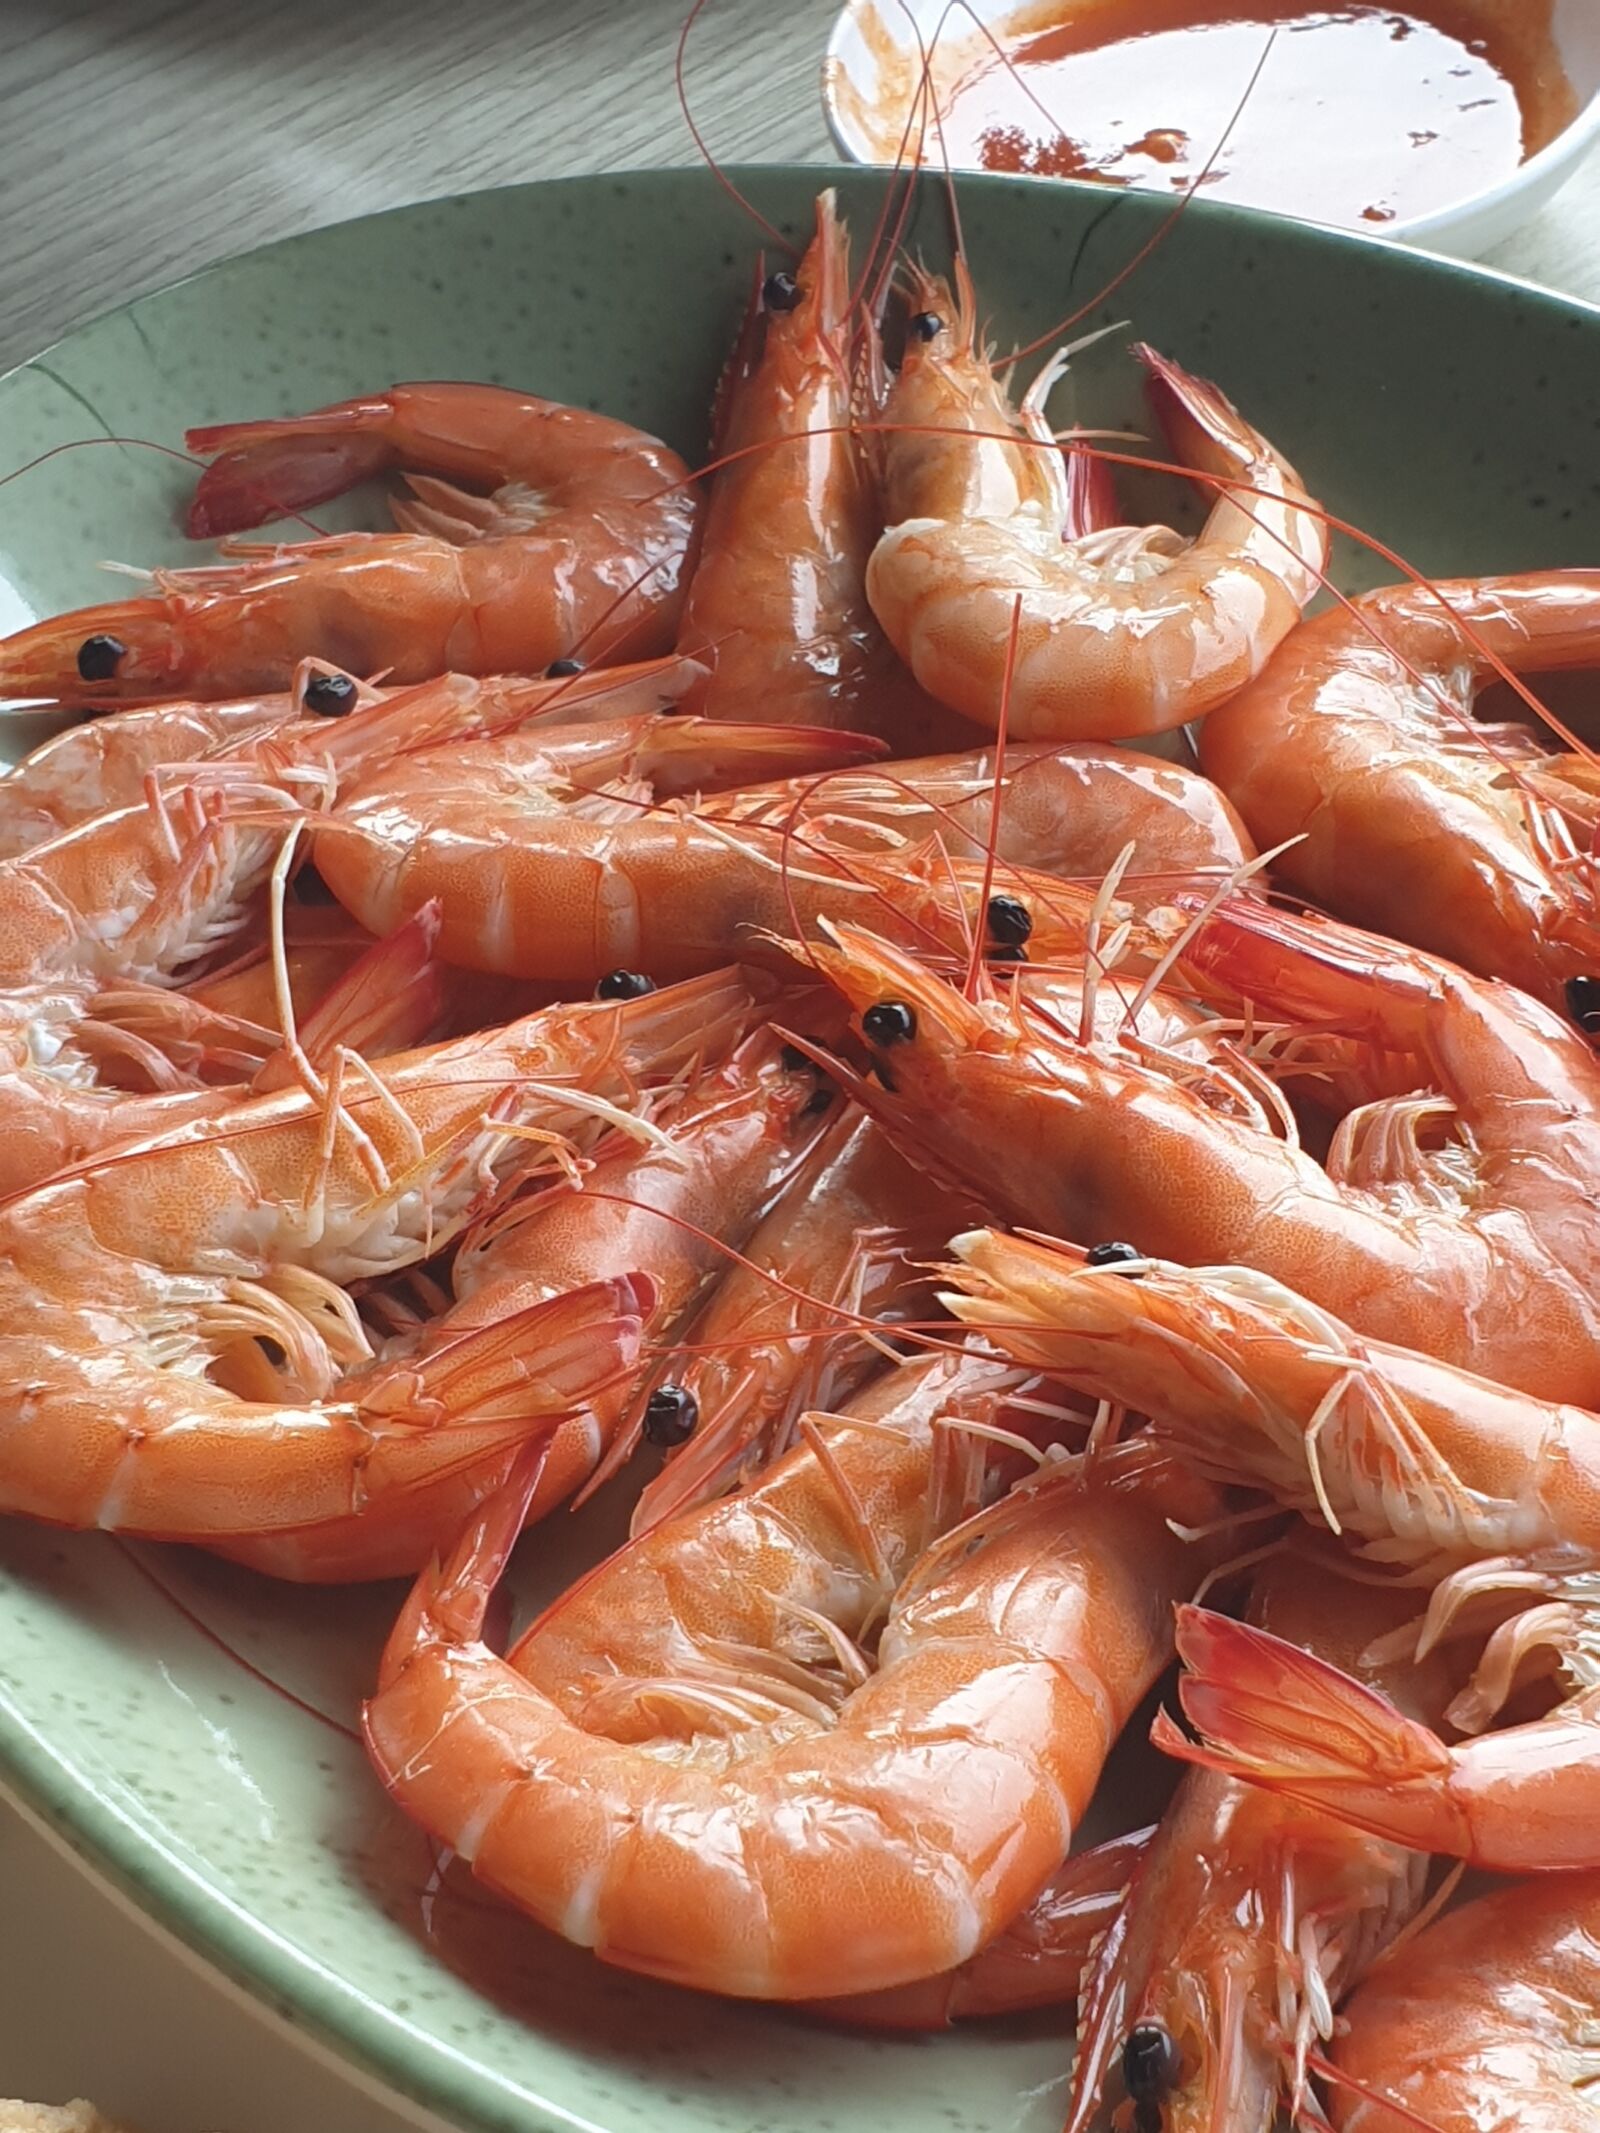 Samsung Galaxy S9+ sample photo. Shrimp, cuisine, culinary photography